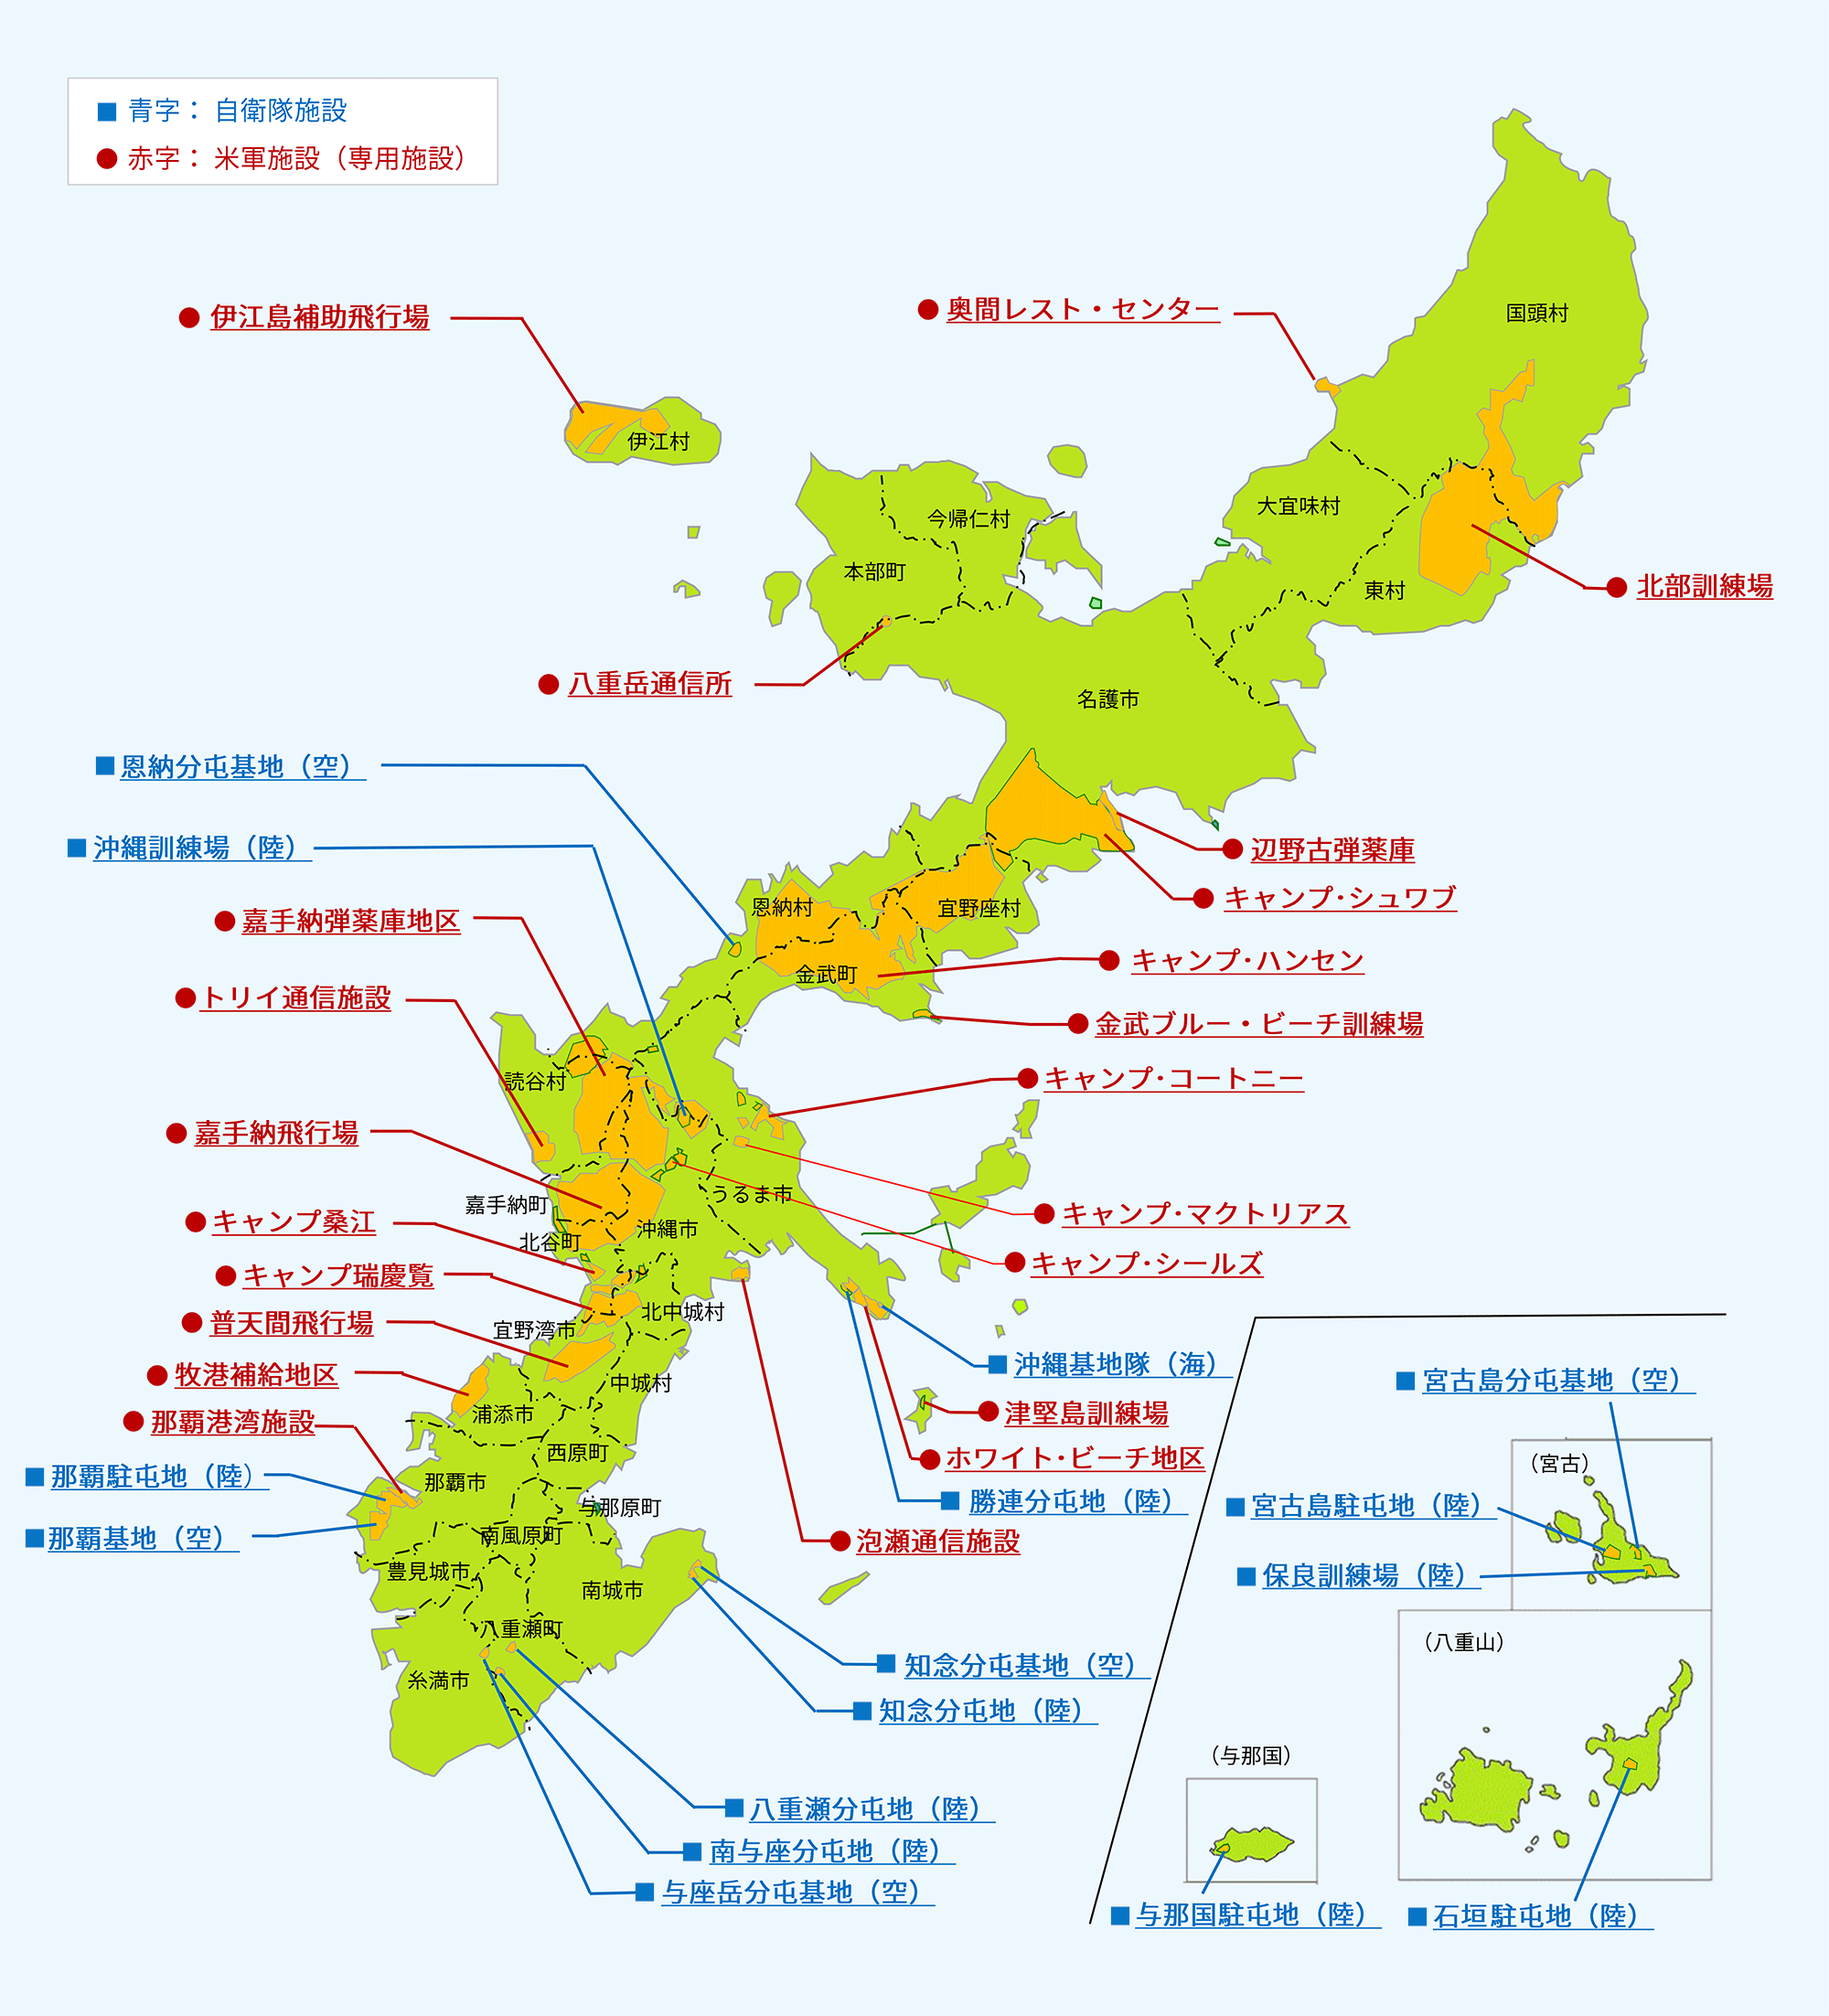 沖縄防衛局管内における自衛隊施設と米軍施設（専用施設）を示した図